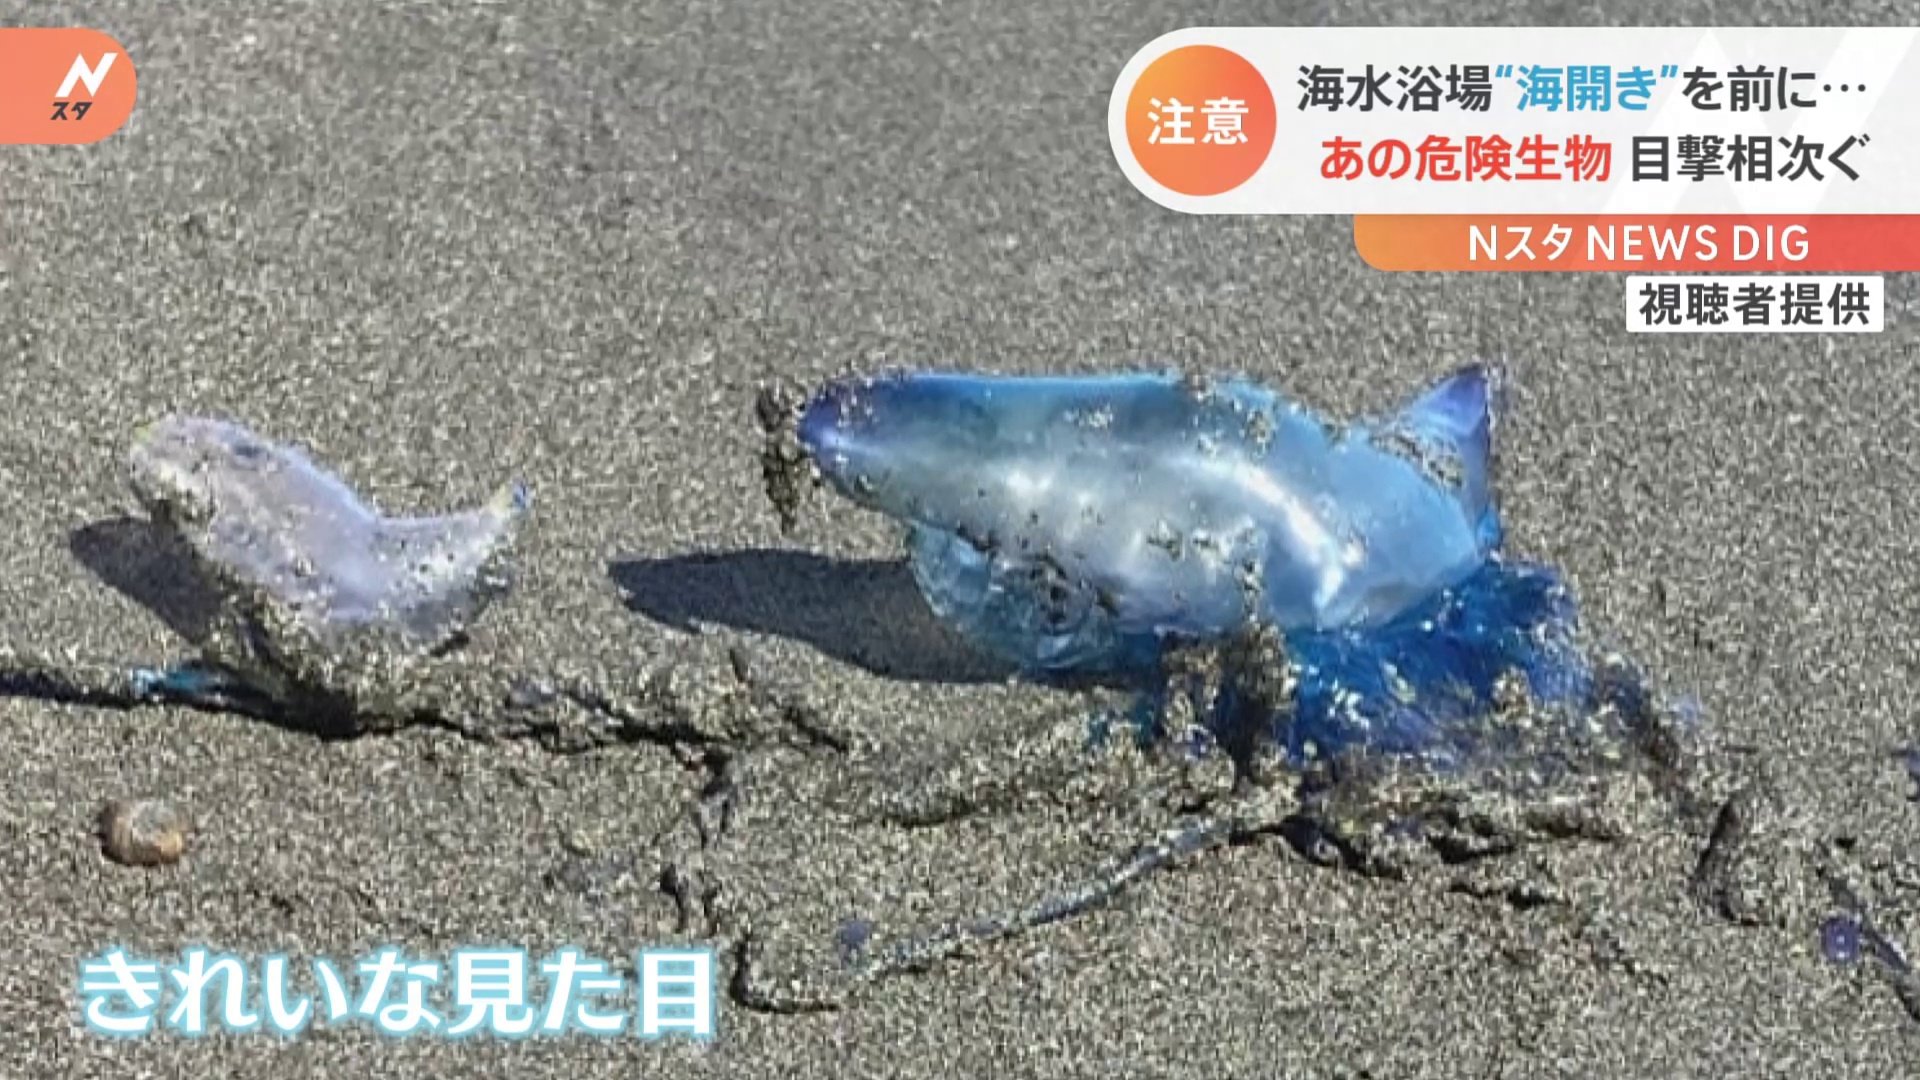 子どもが触っちゃいそう 神奈川の海岸に透明で綺麗な 謎の物体 海開き目前に目撃相次ぐ正体は 危険生物 Nスタ Tbs News Dig